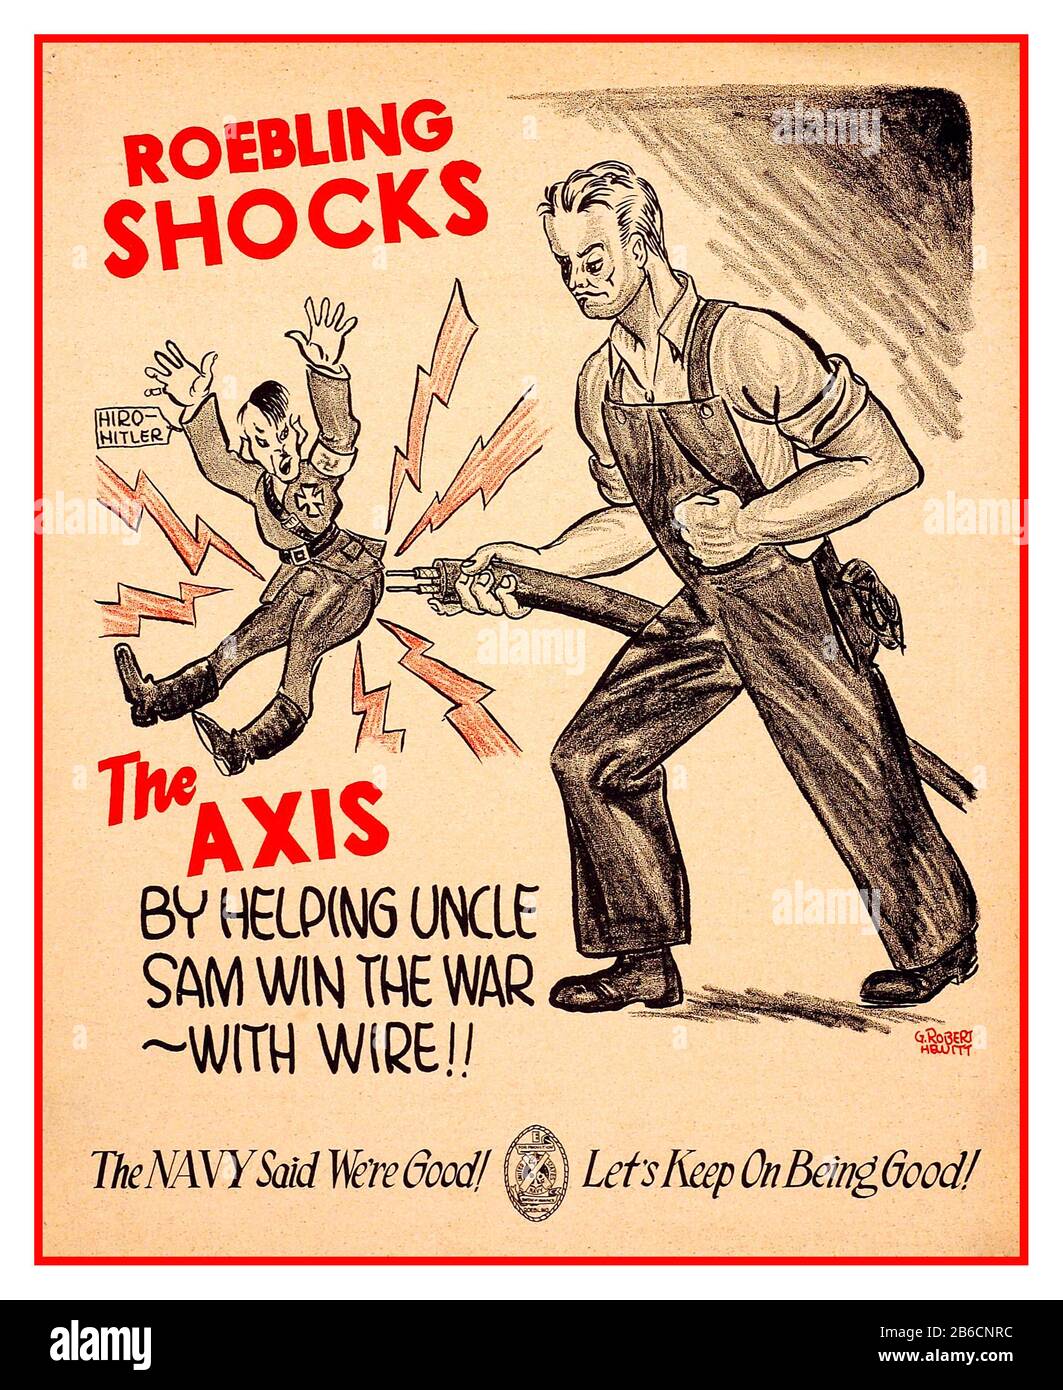 Vintage 1940 WW2 American Cartoon propagande travail sortie 'ROEBLING CHOTS' L'AXE en aidant l'Oncle Sam à gagner la guerre - avec le fil !! Avec une caricature Hitler/Hiro ayant des chocs électriques seconde Guerre mondiale Banque D'Images